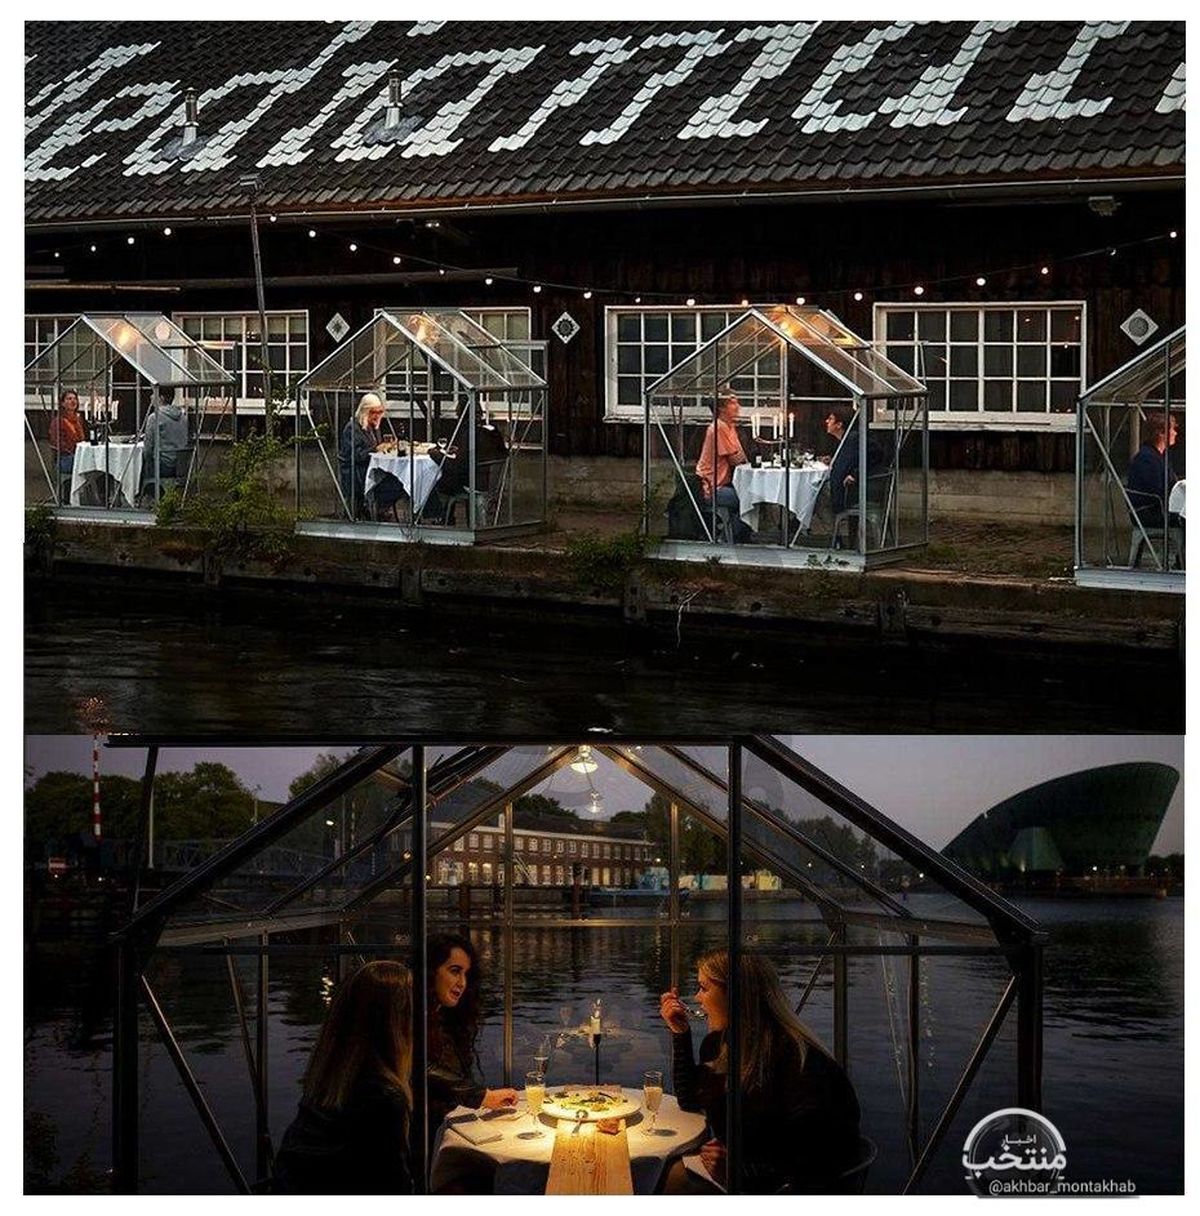 گلخانه قرنطینه؛ رستورانی در آمستردام روش جدیدی معرفی کرده و با اقبال عمومی مواجه شده است